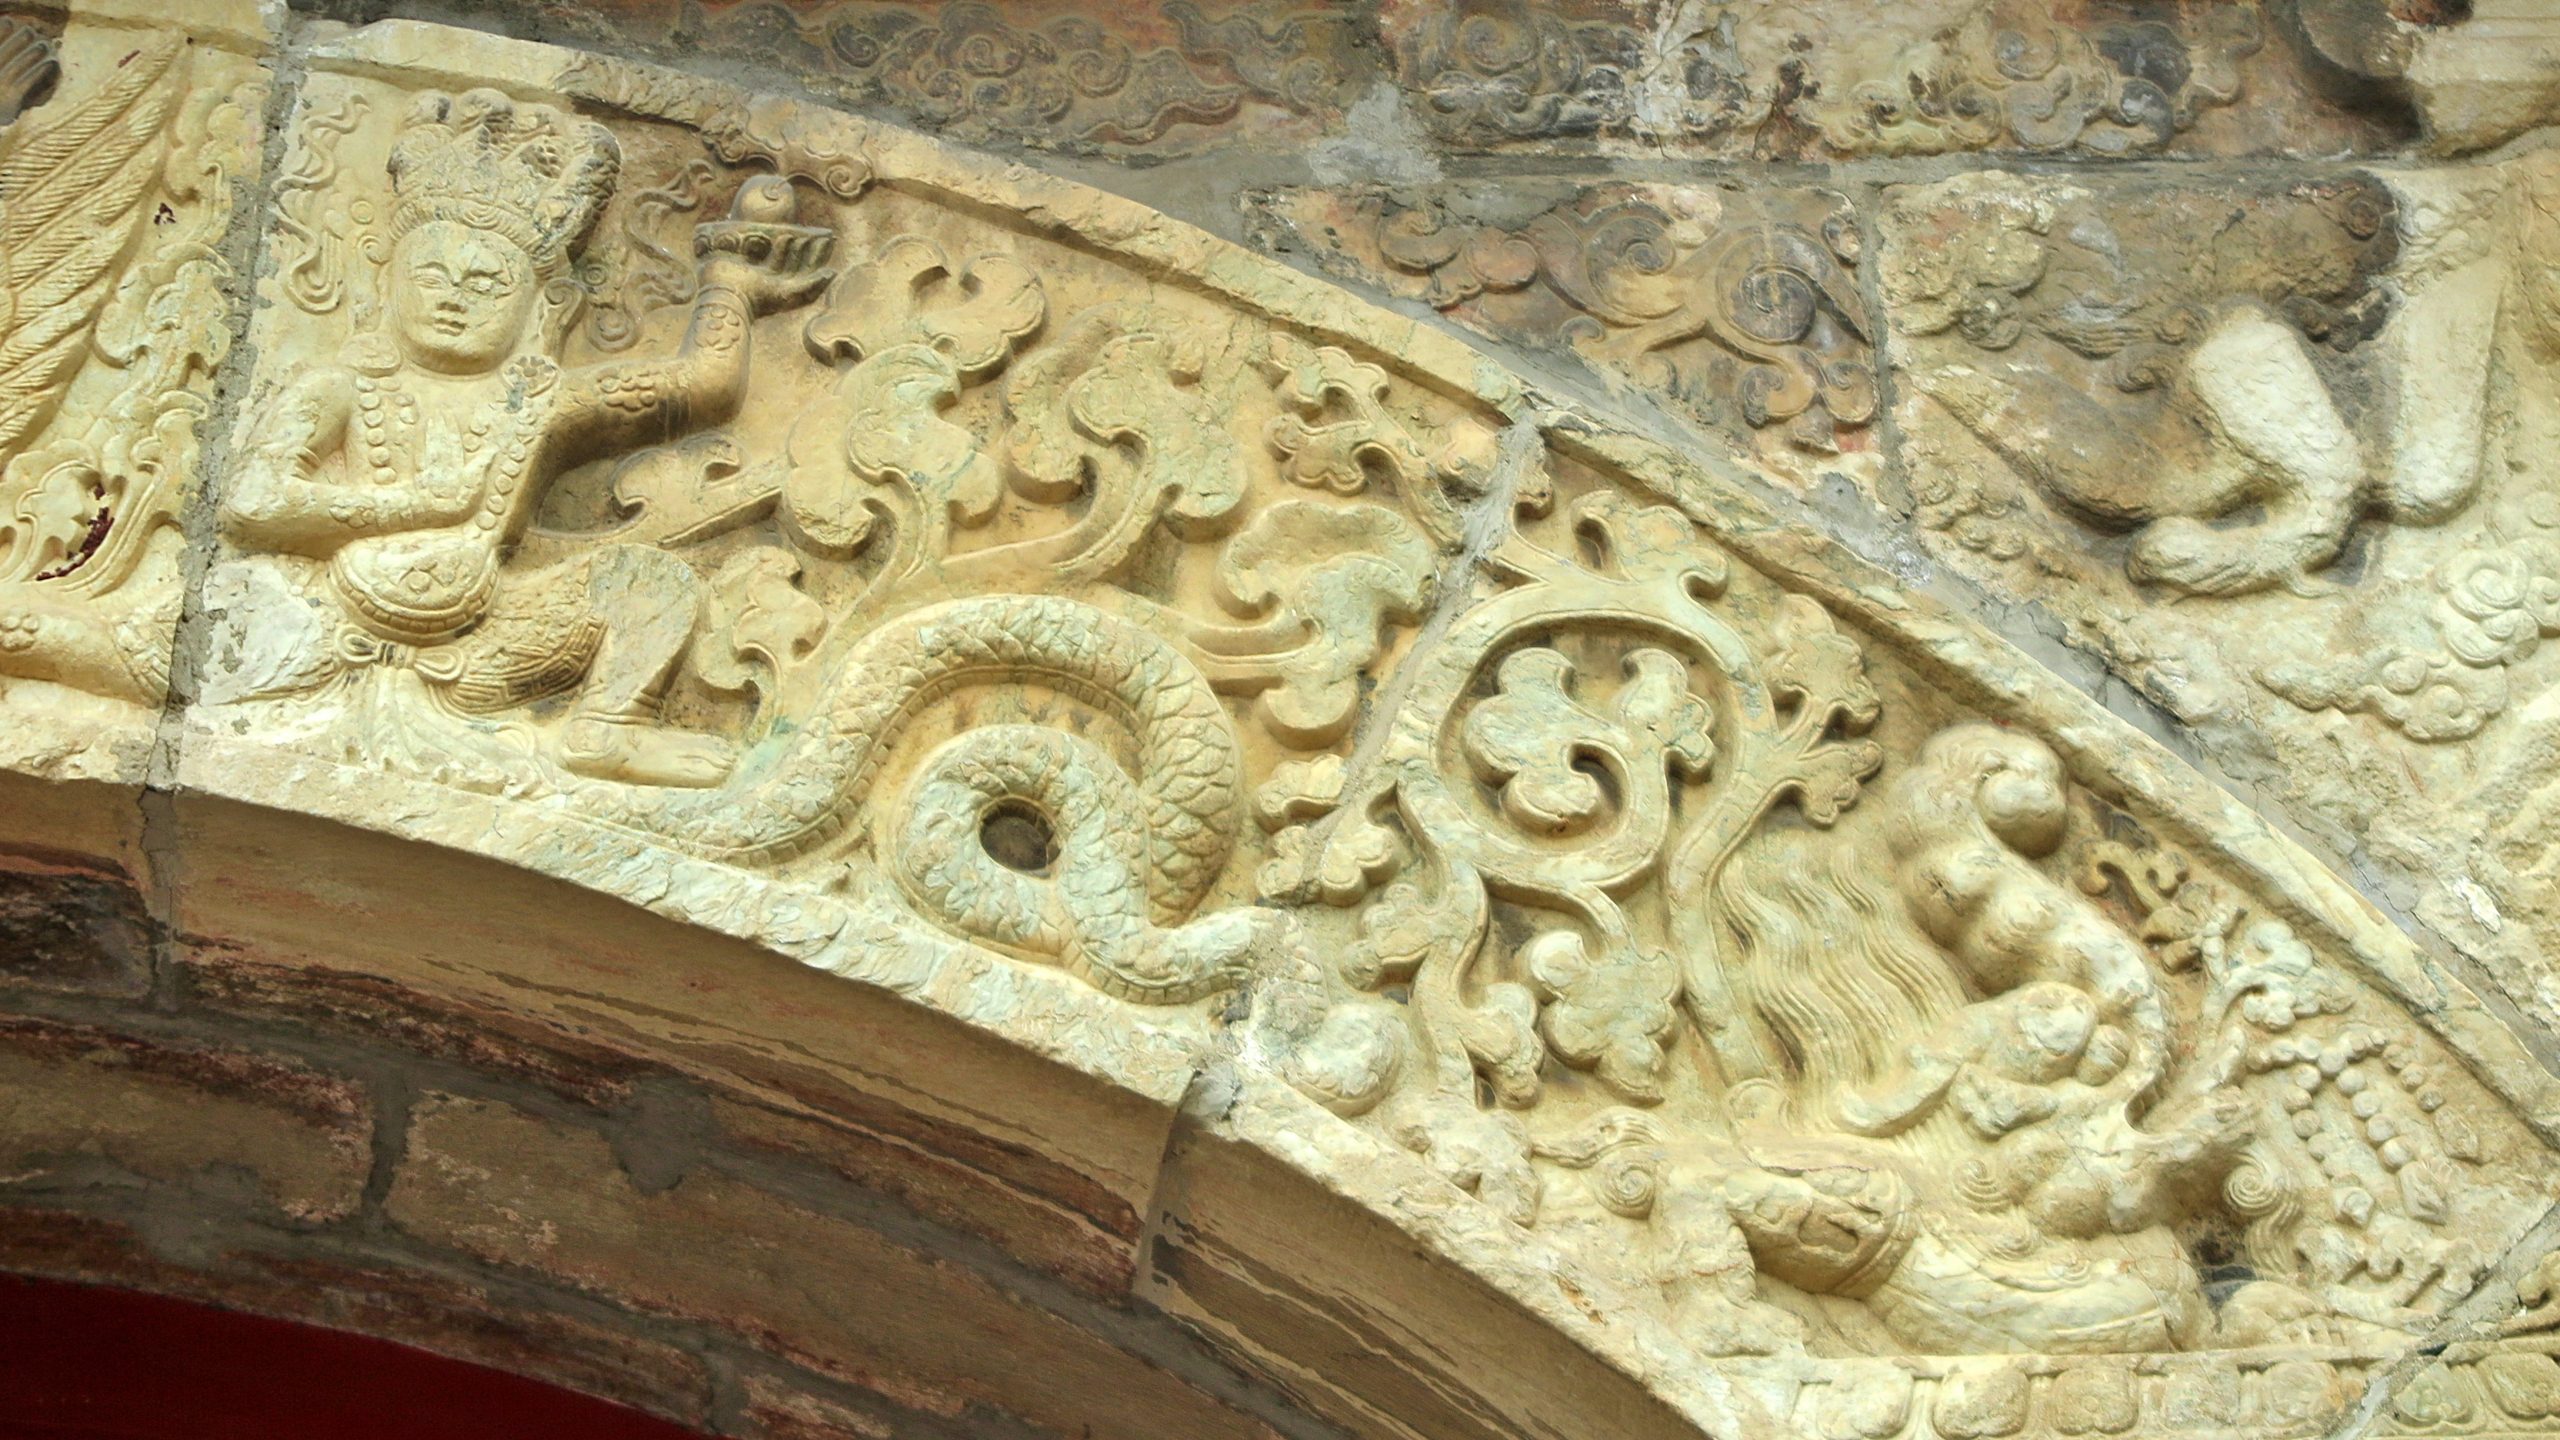 拱门券面上刻有金翅鸟、狮、象、孔雀、飞羊等图饰。